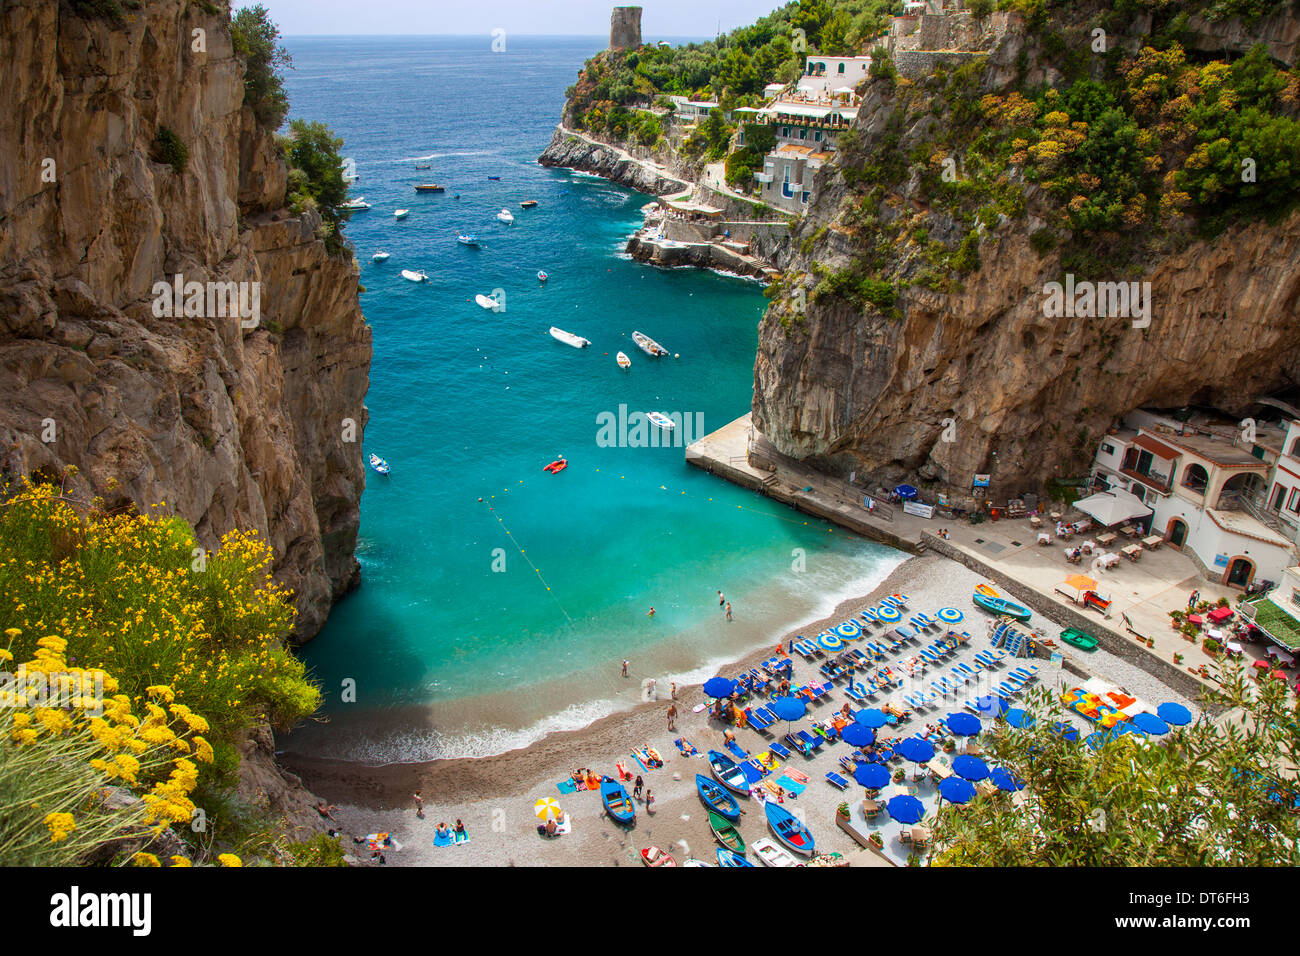 Plage de Marina di Praiano le long de la côte d'Amalfi, à proximité de Praiano, Italie Campanie Banque D'Images